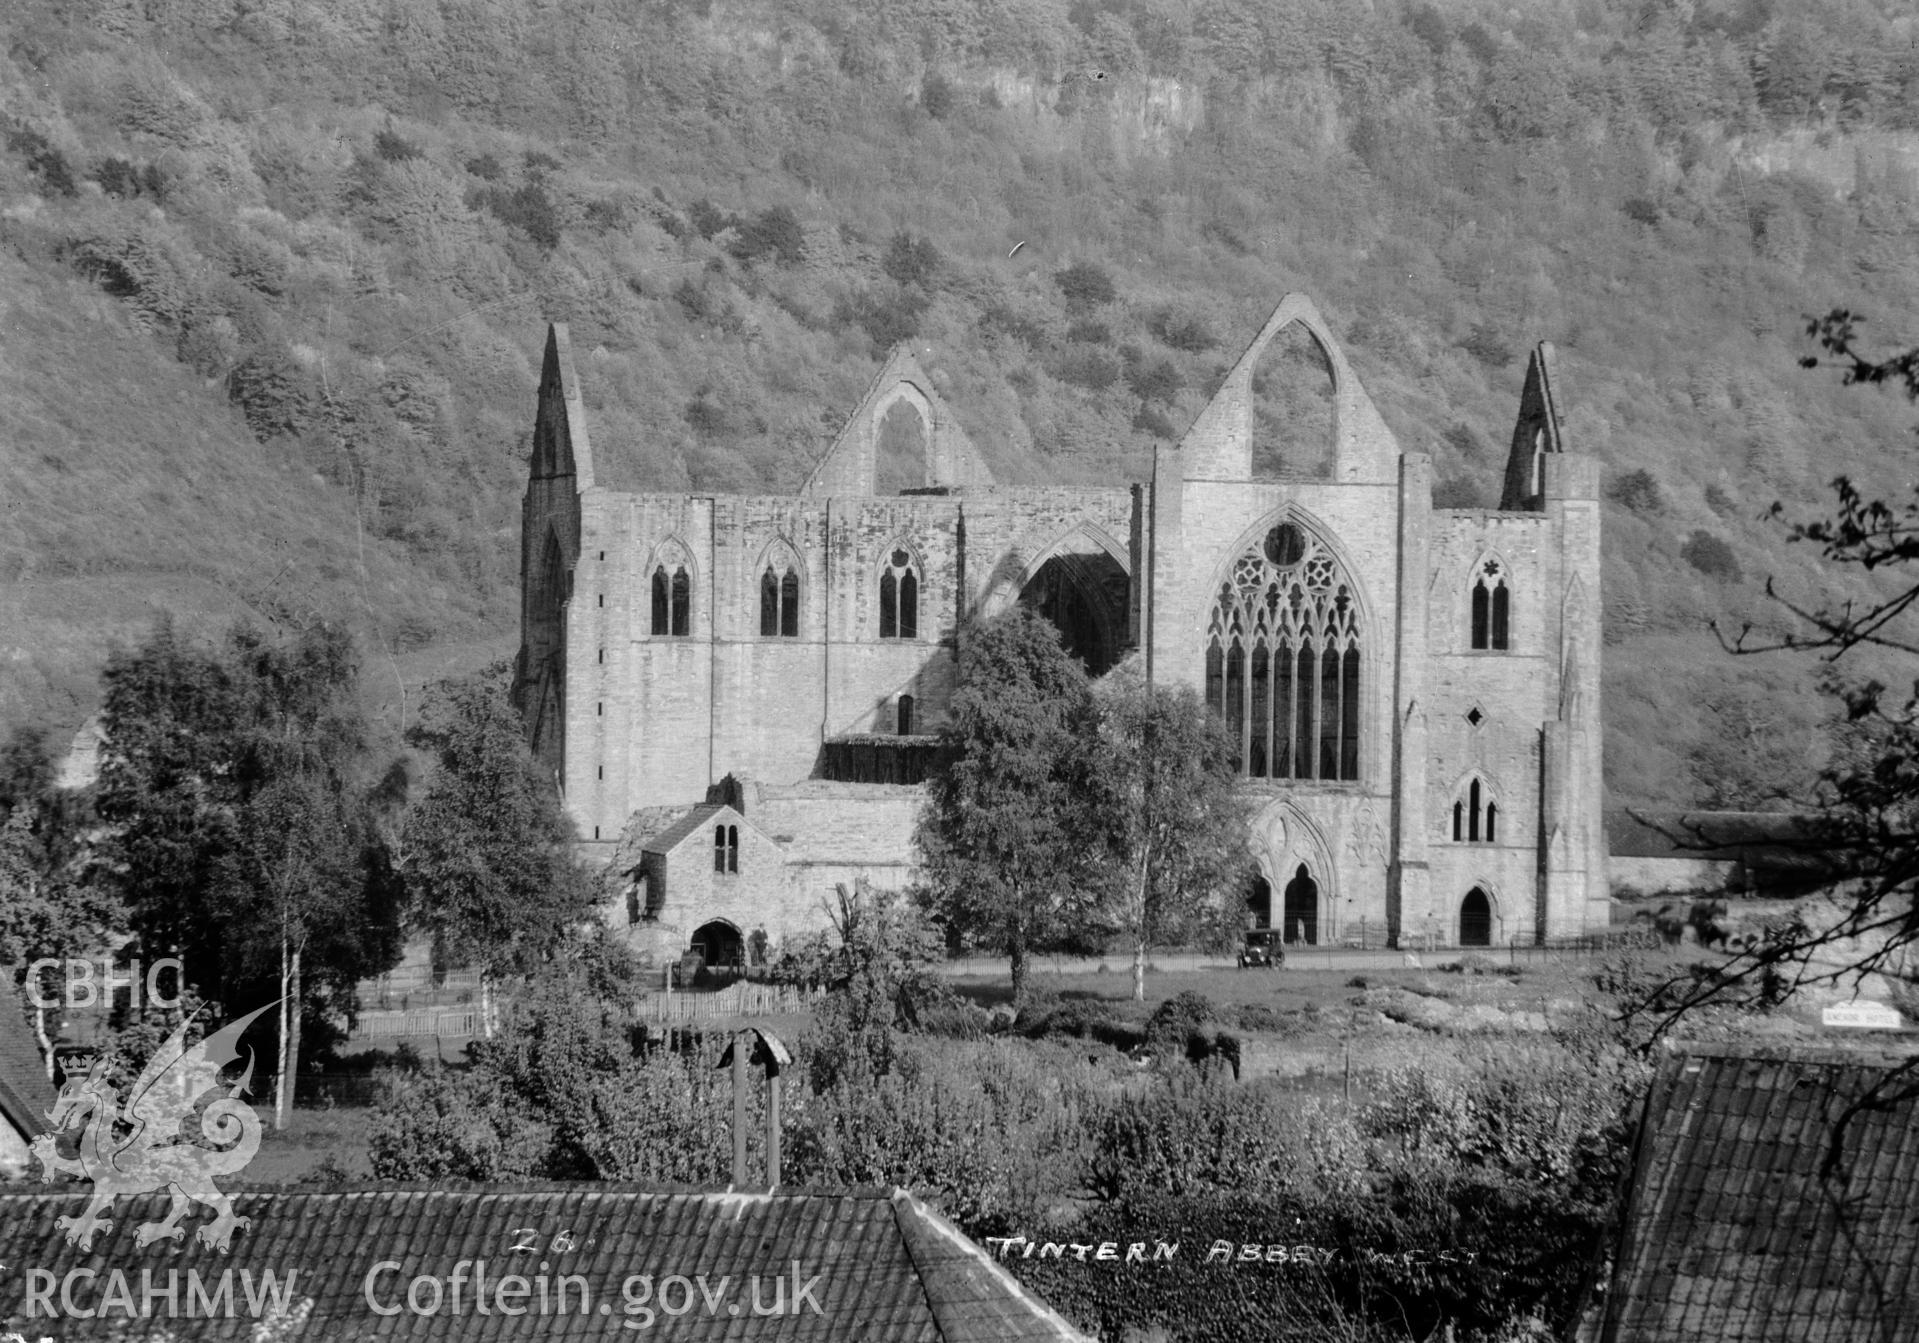 View of Tintern Abbey taken by W A Call.